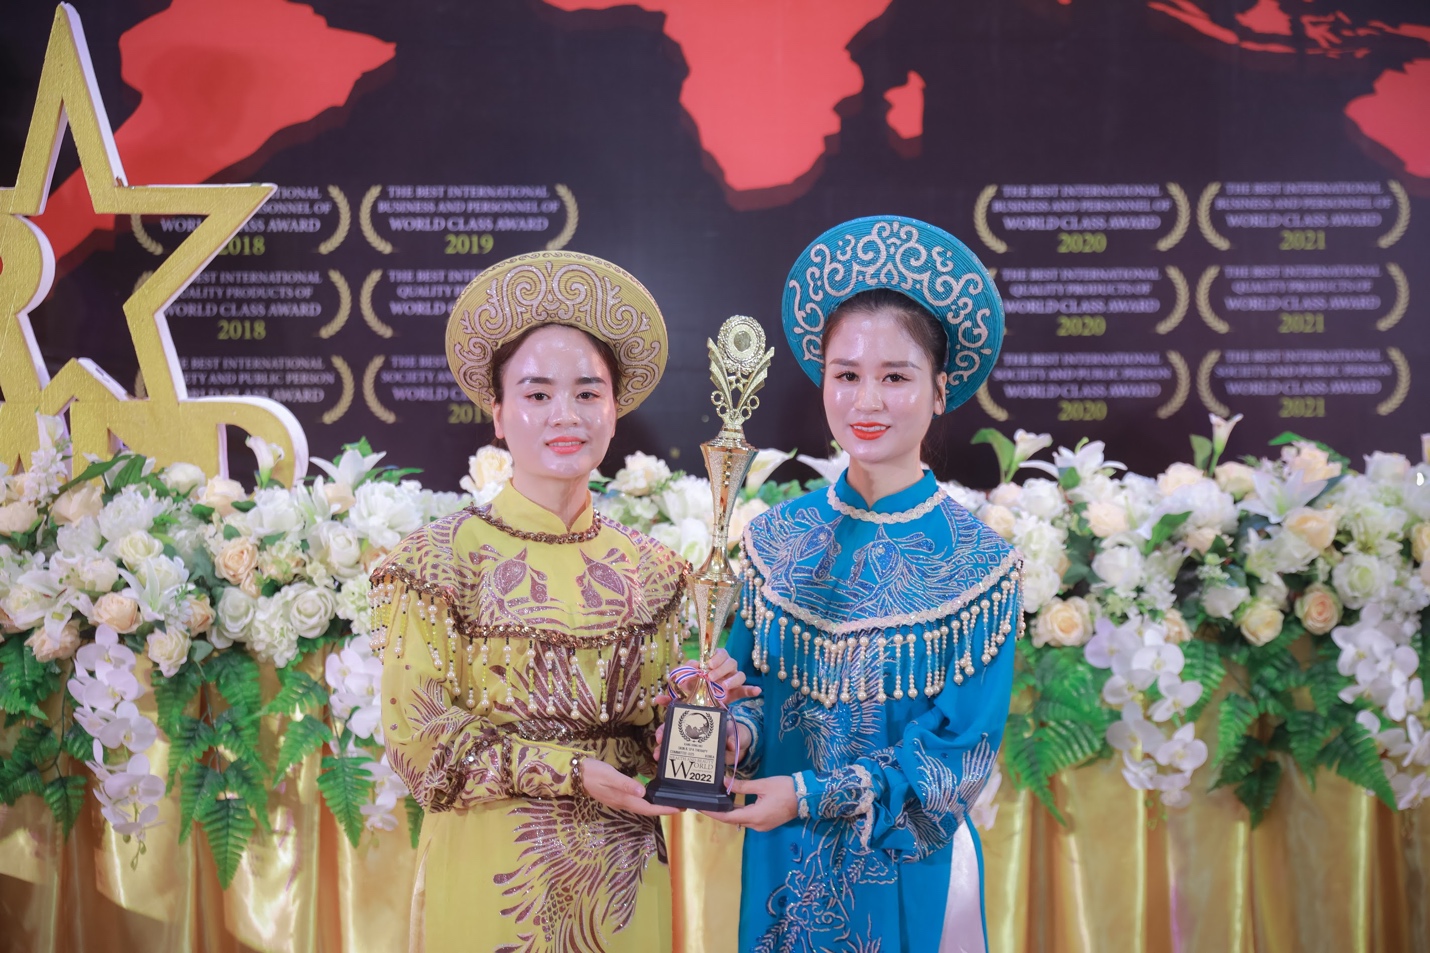 Thương hiệu Lurcinn nhận giải thưởng mỹ phẩm quốc tế tại Thái Lan 2022 - Ảnh 1.